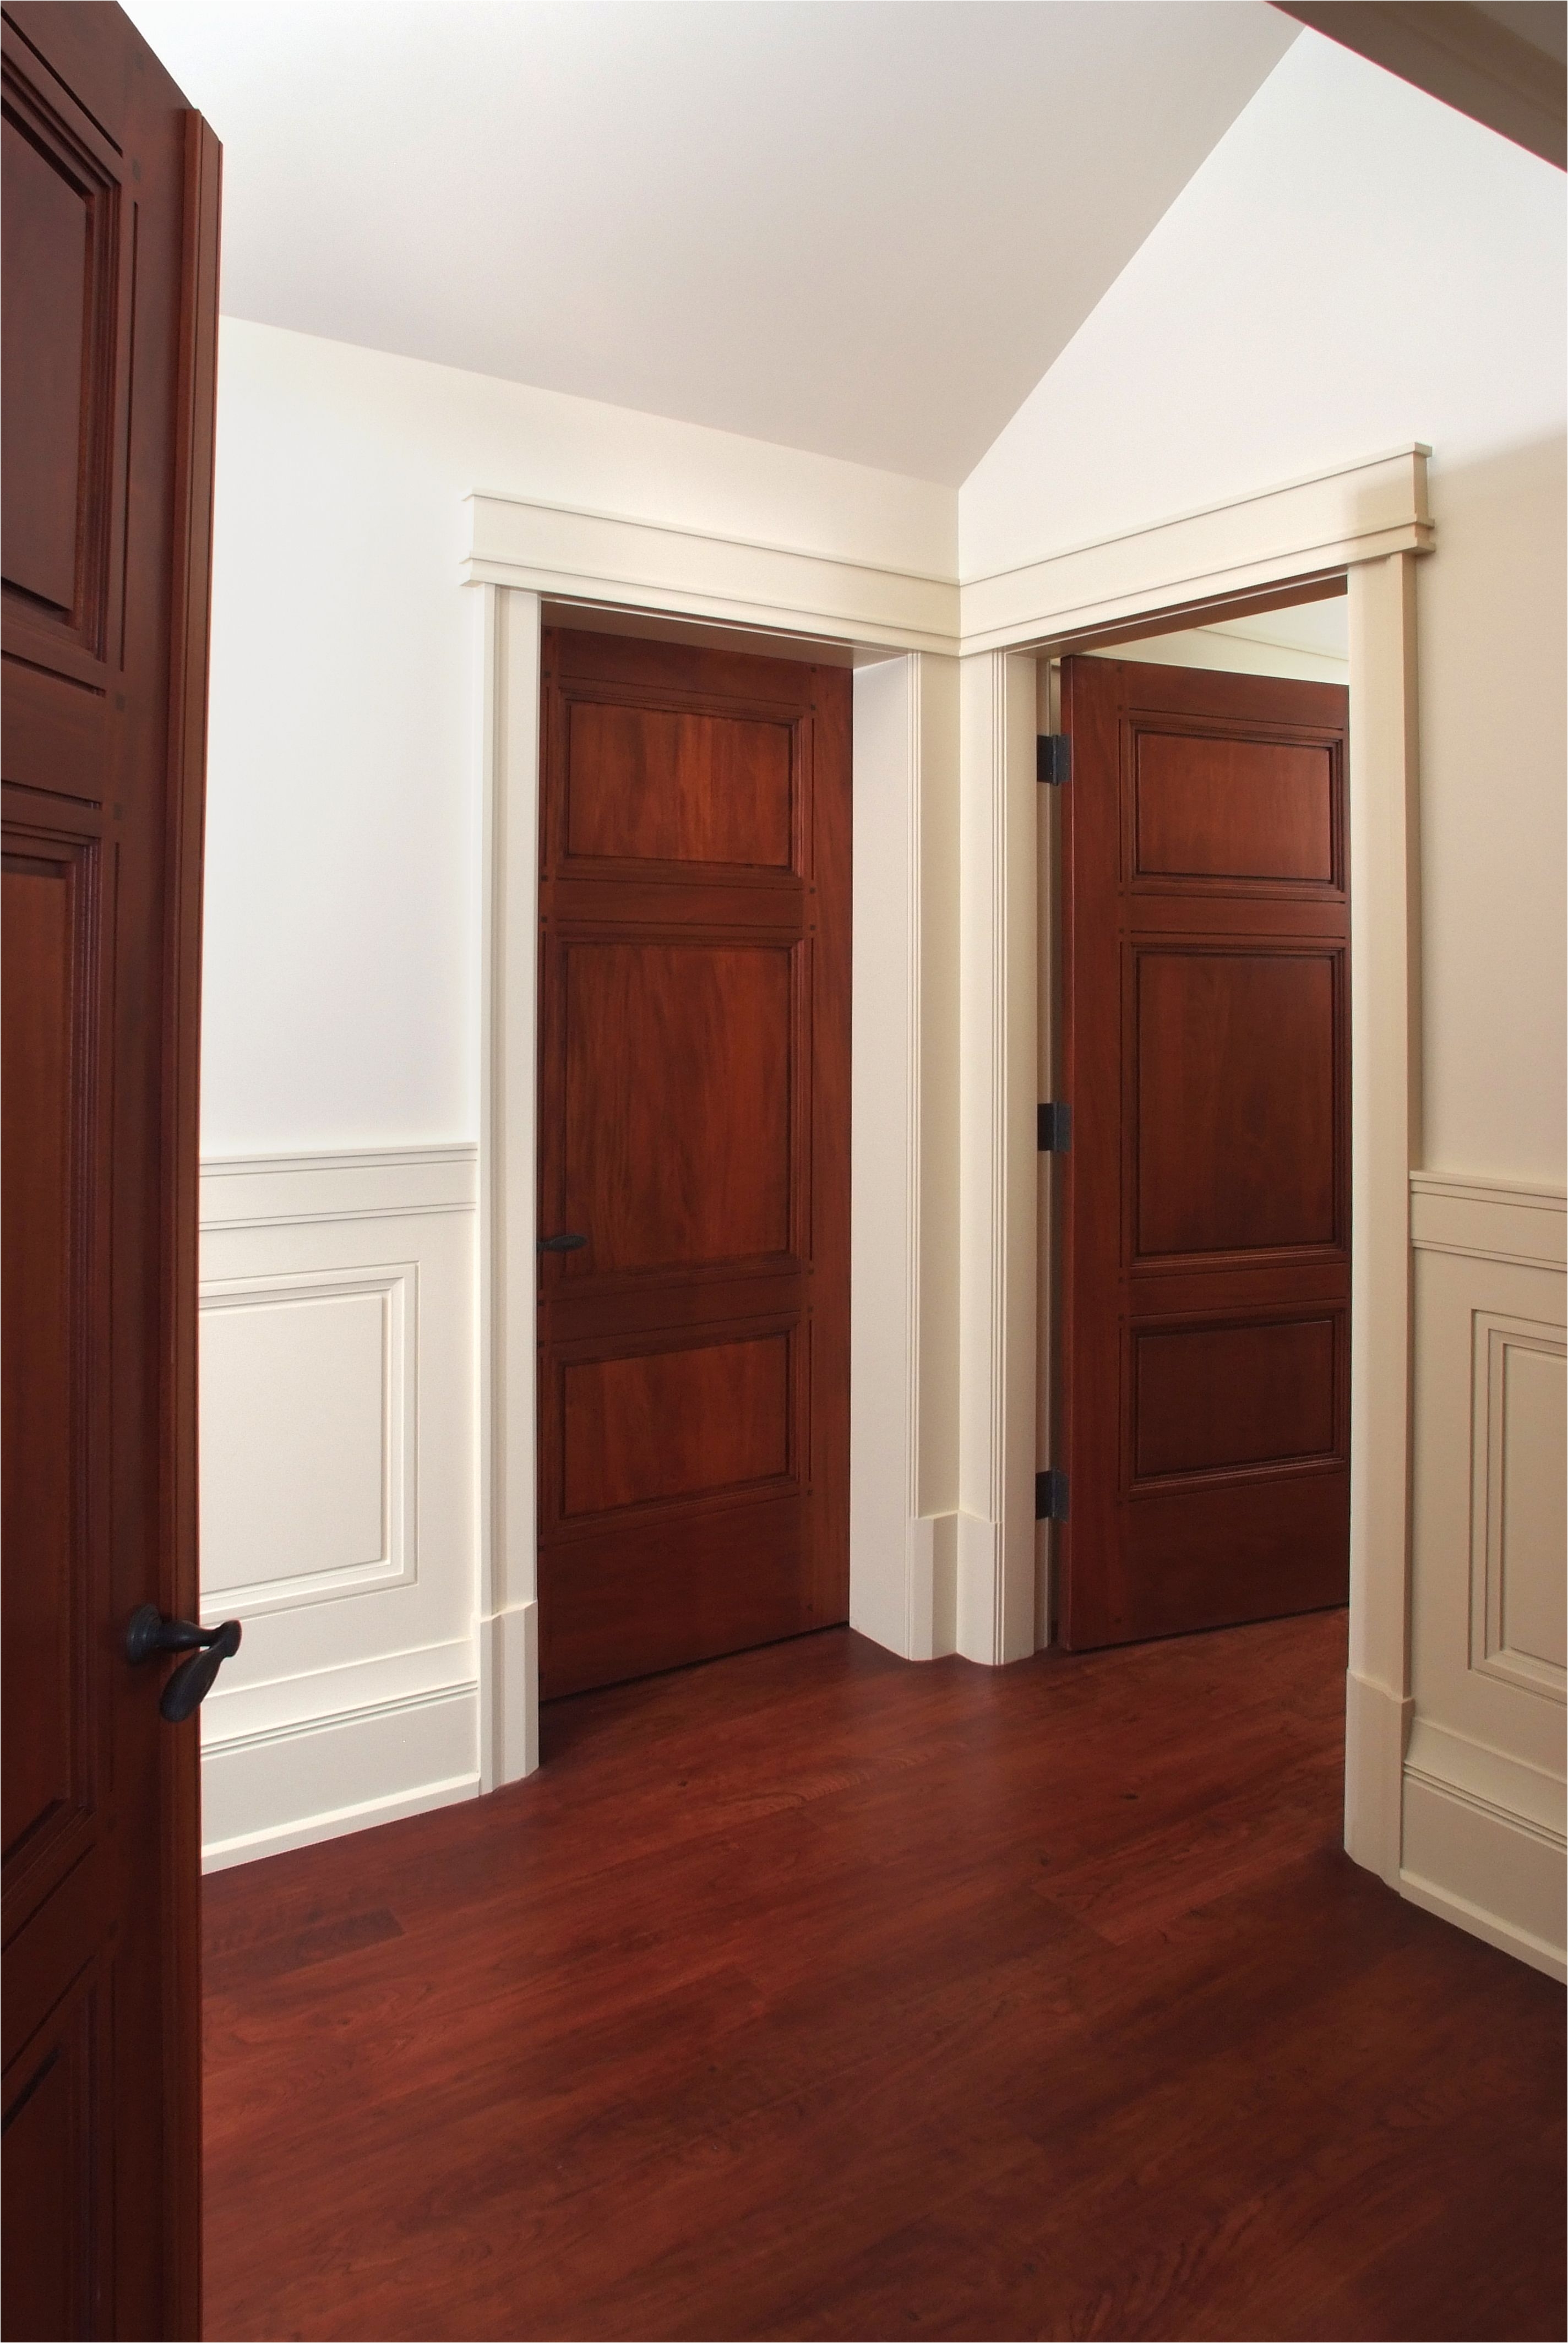 custom 3 panel mahogany interior door with craftsman style painted door casing and cherry hardwood floor